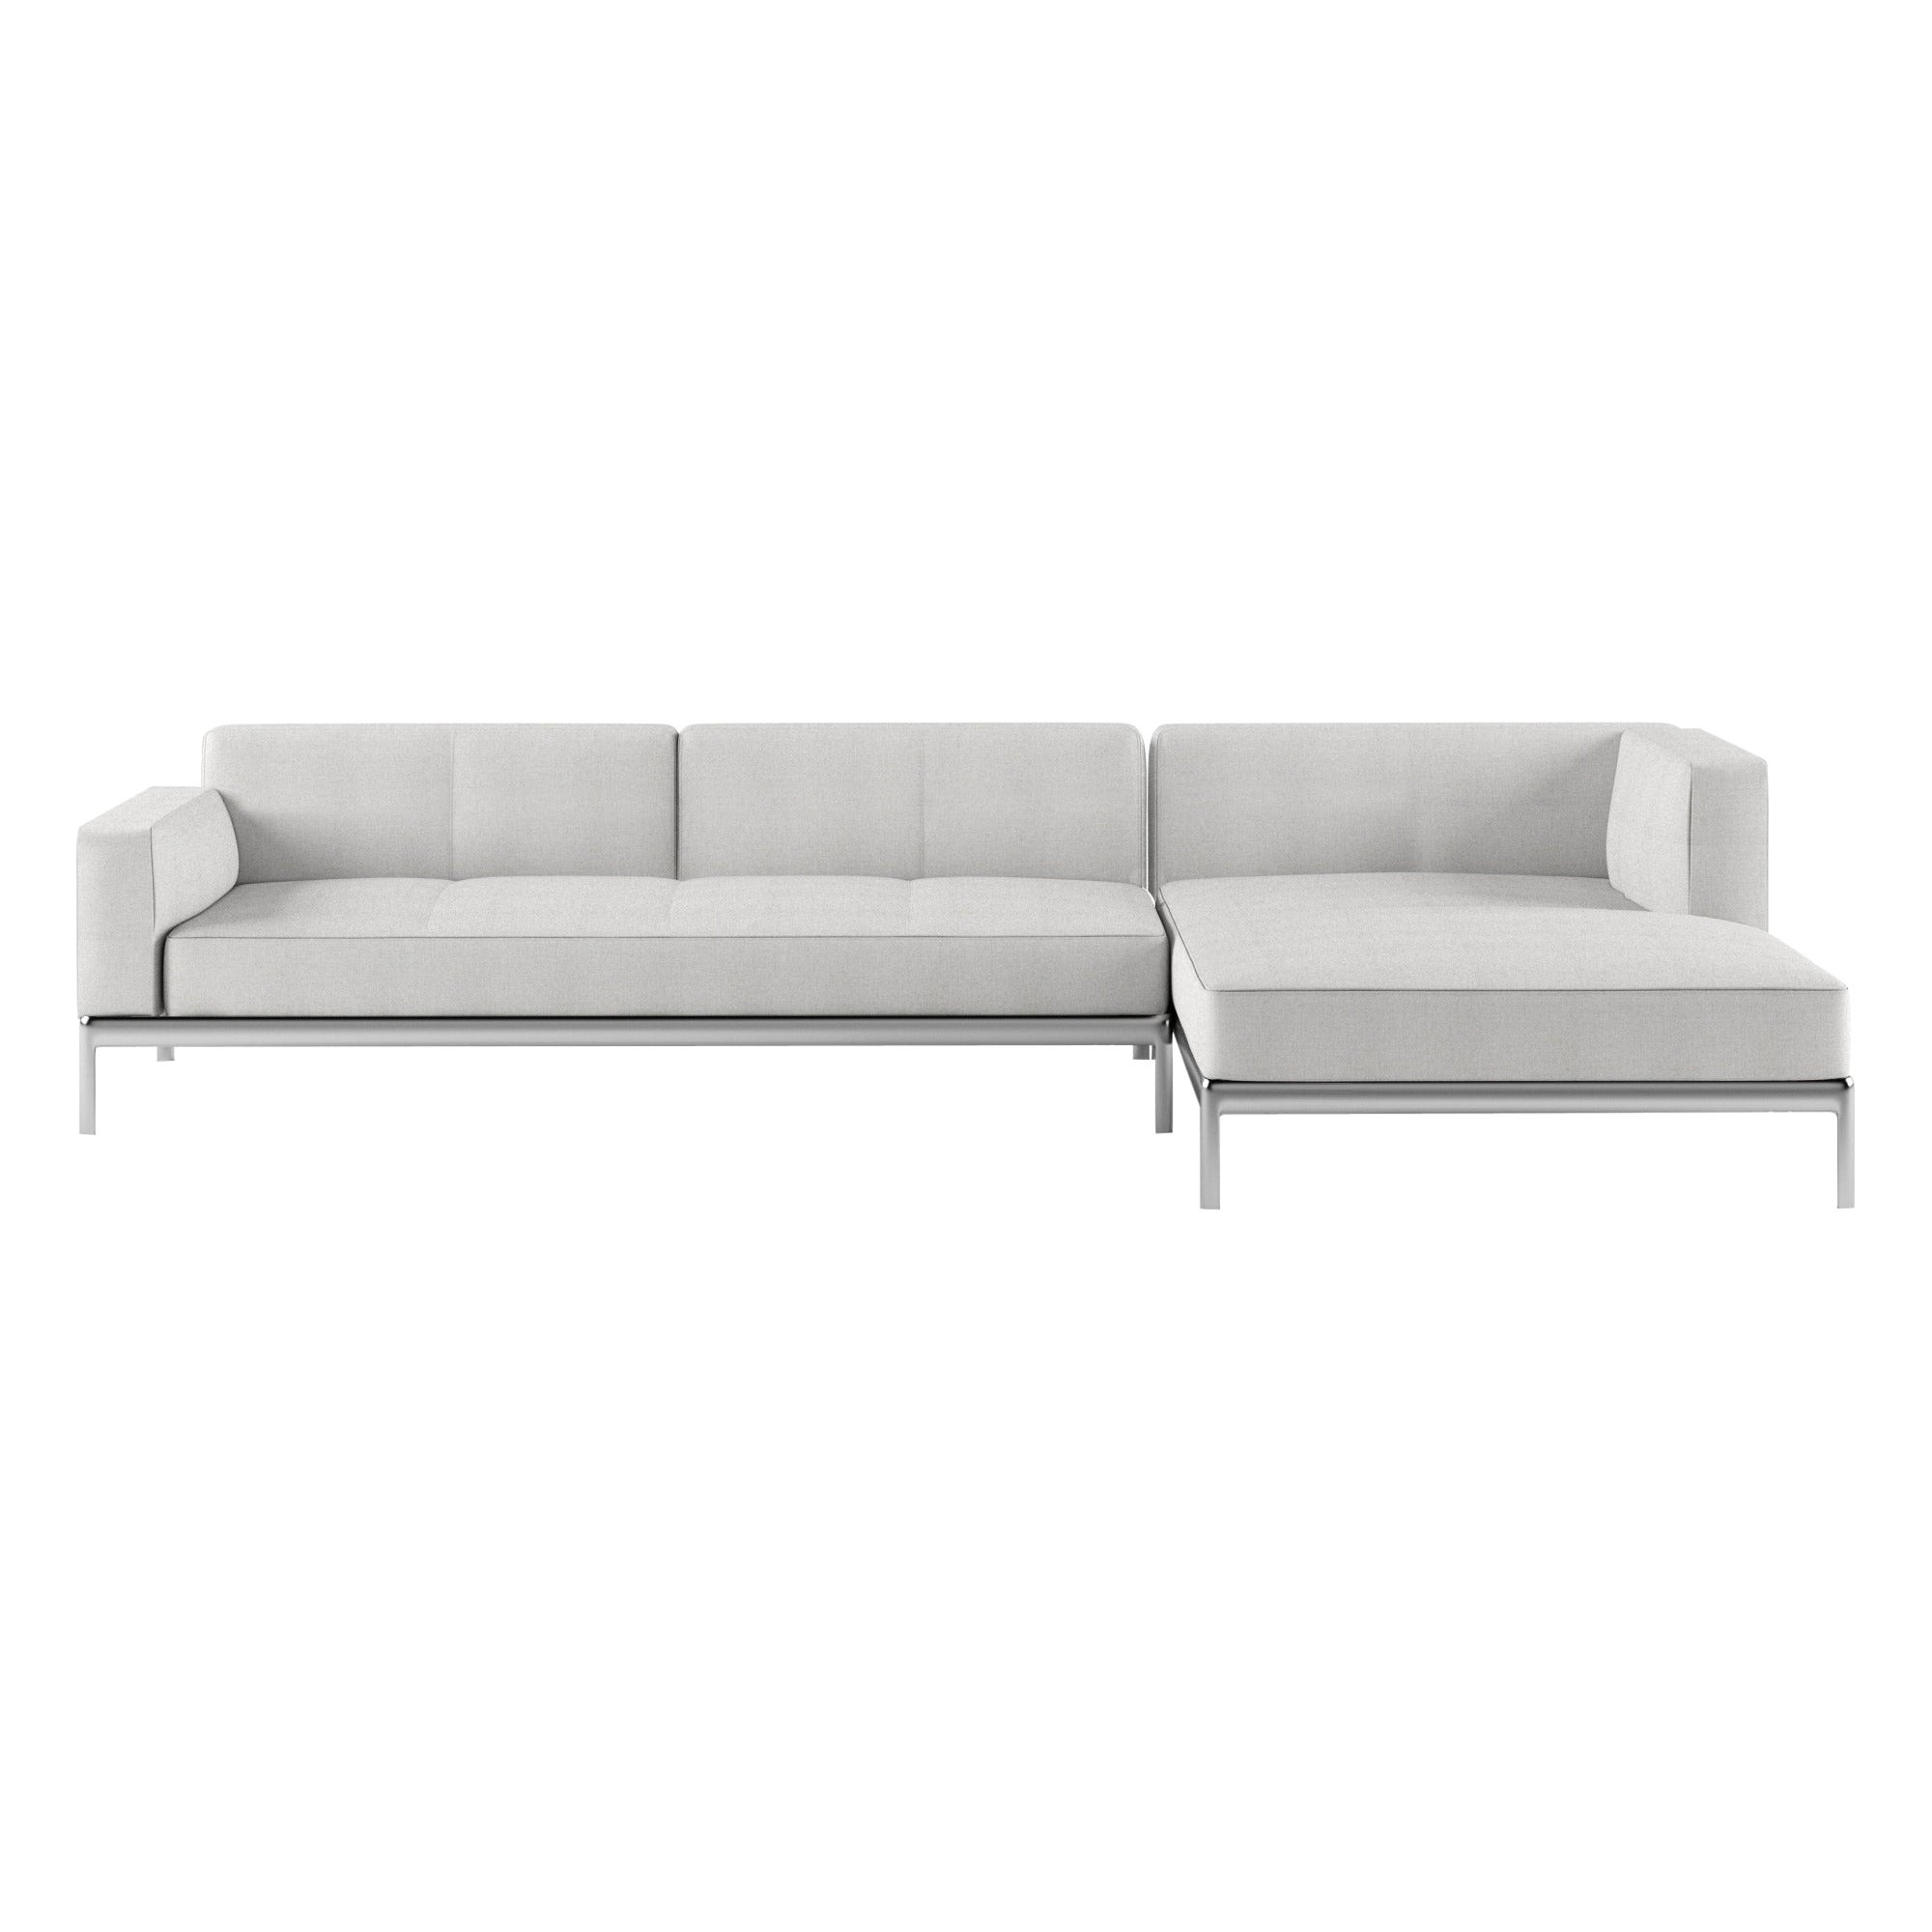 Alias P06+P05 Aluminium-Sofa mit Polsterung und poliertem Aluminiumrahmen